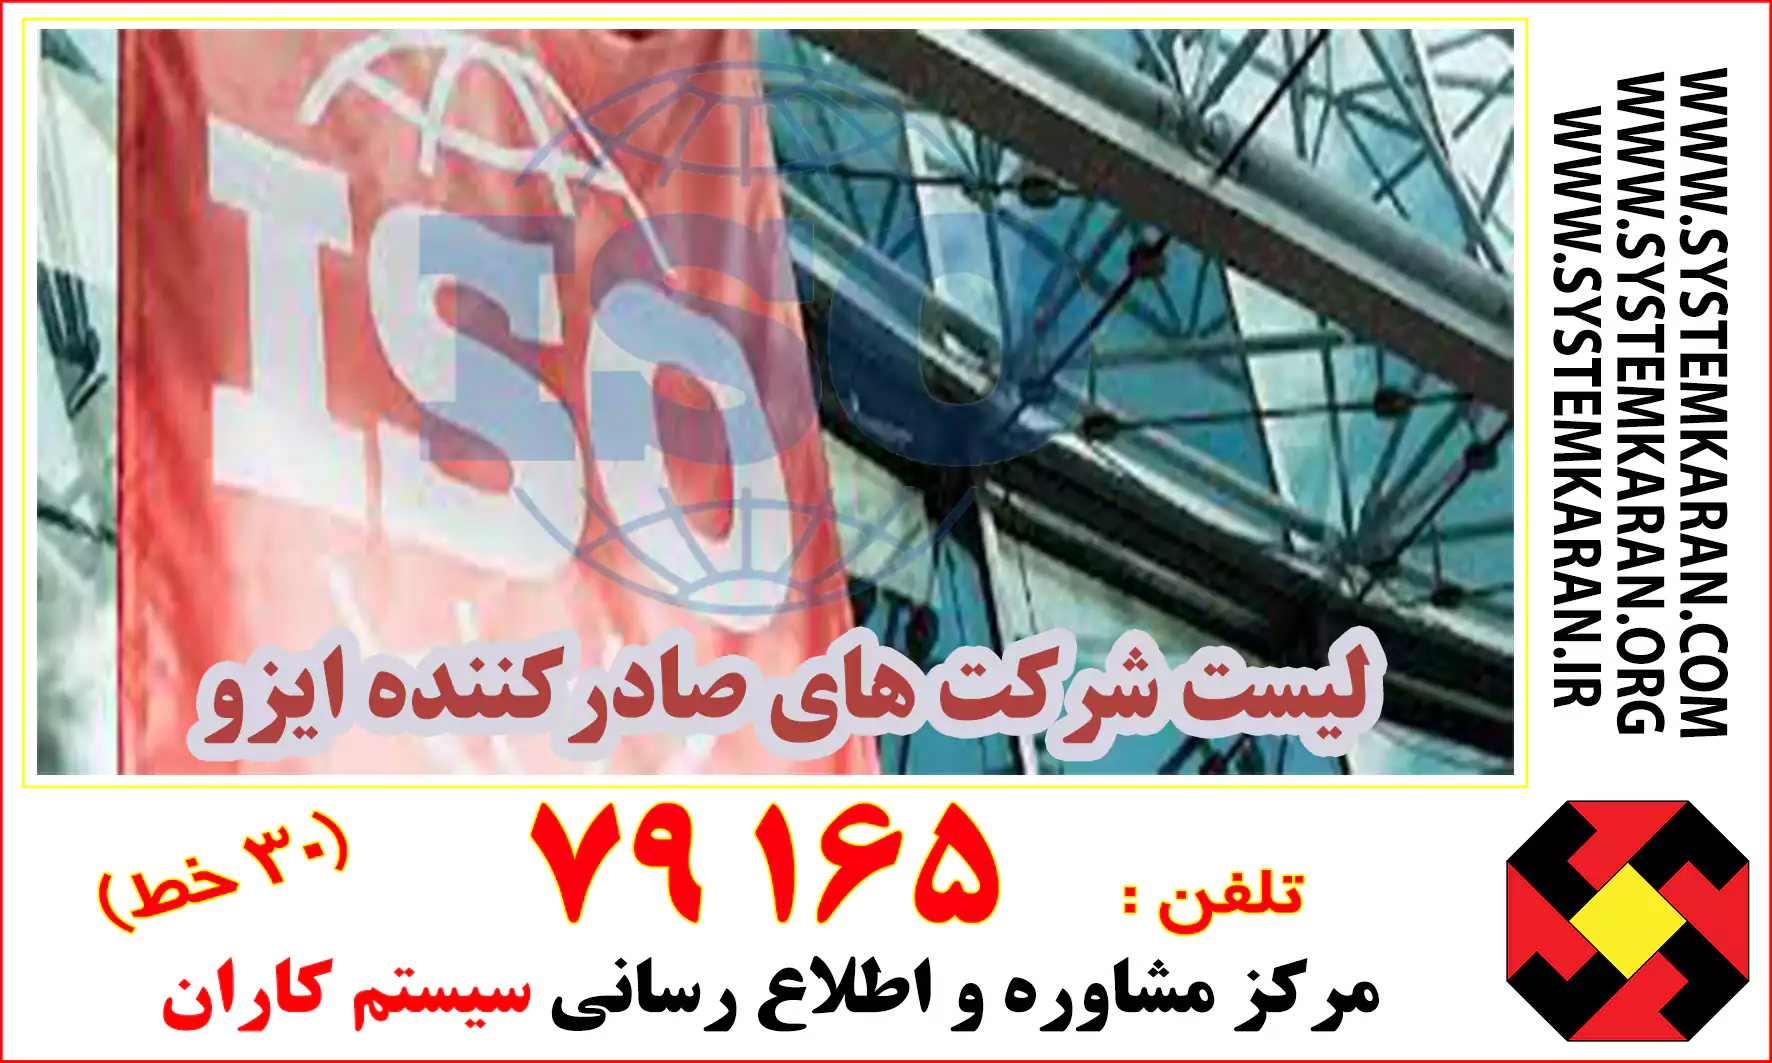 لیست شرکتهای گواهی دهنده ایزو در ایران